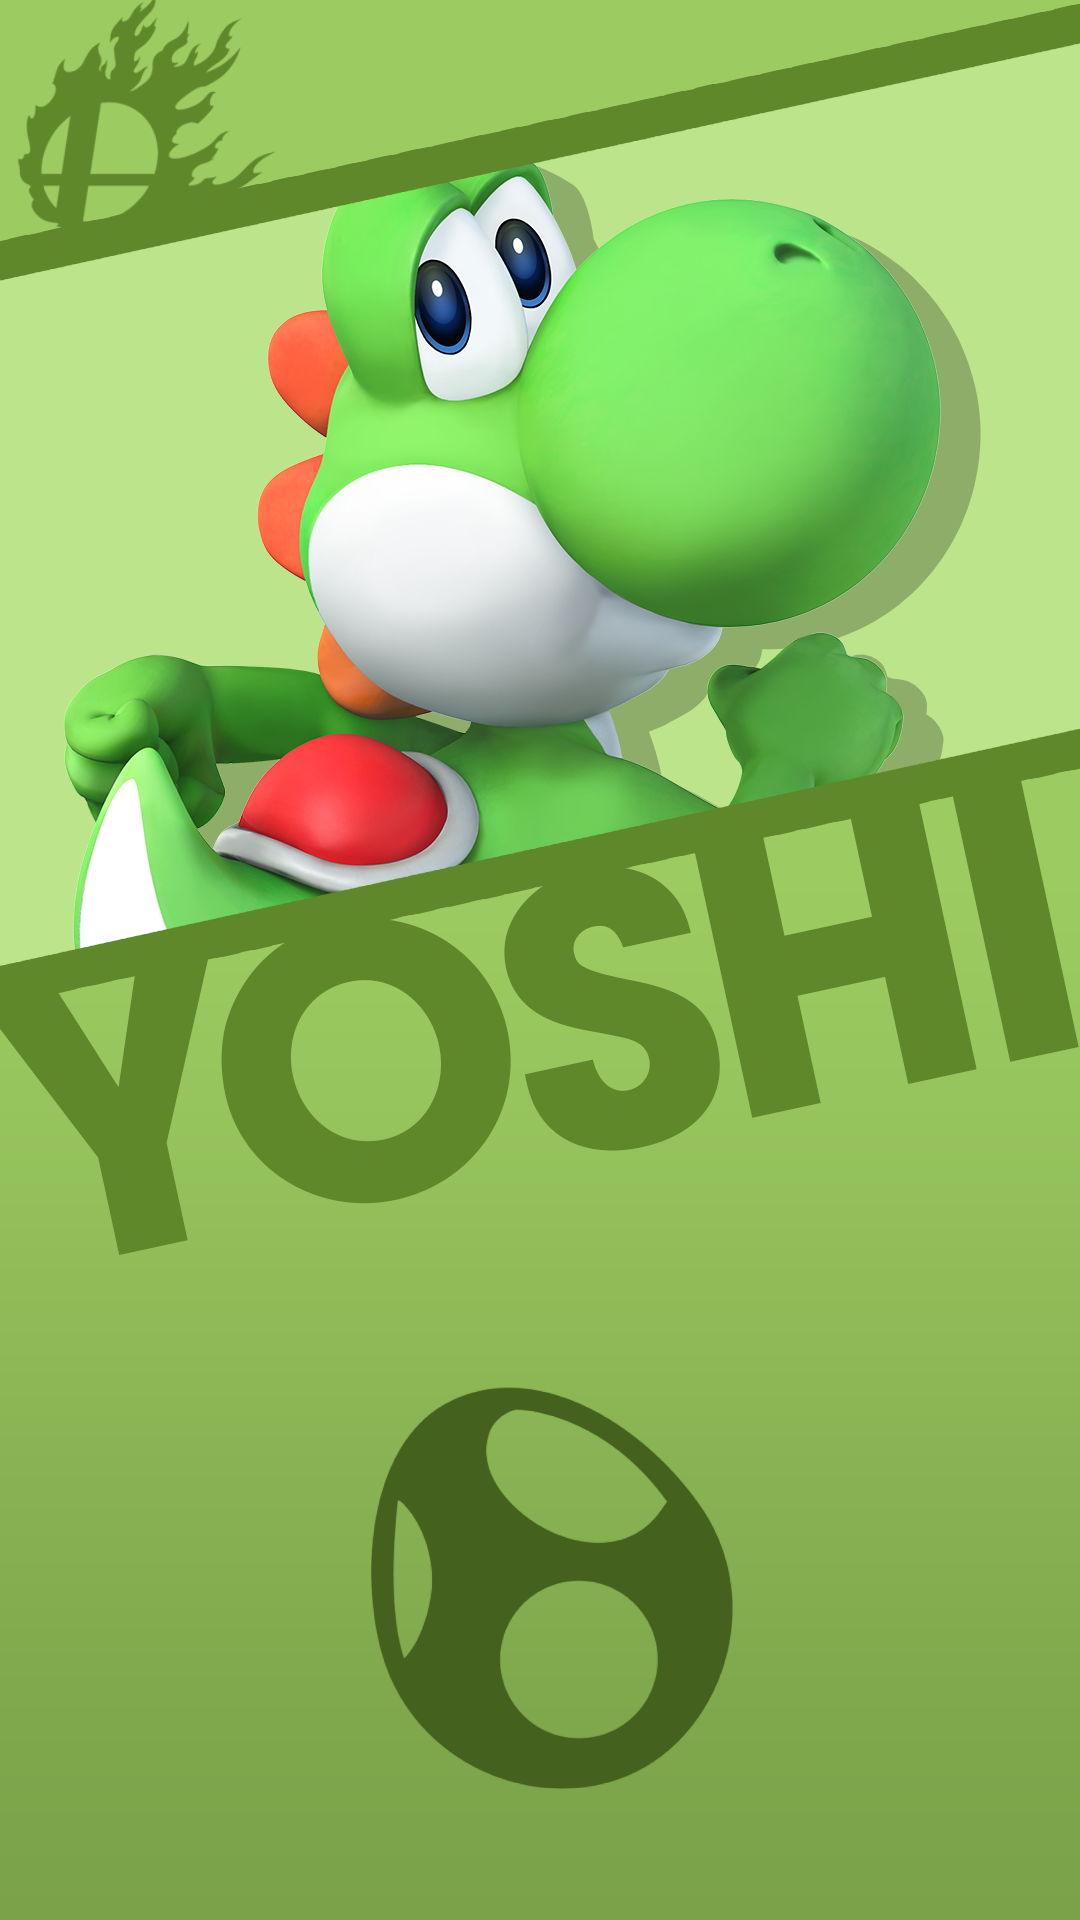 Yoshi Smash Bros Phone Wallpaper By Mrthatkidalex24 On Deviantart